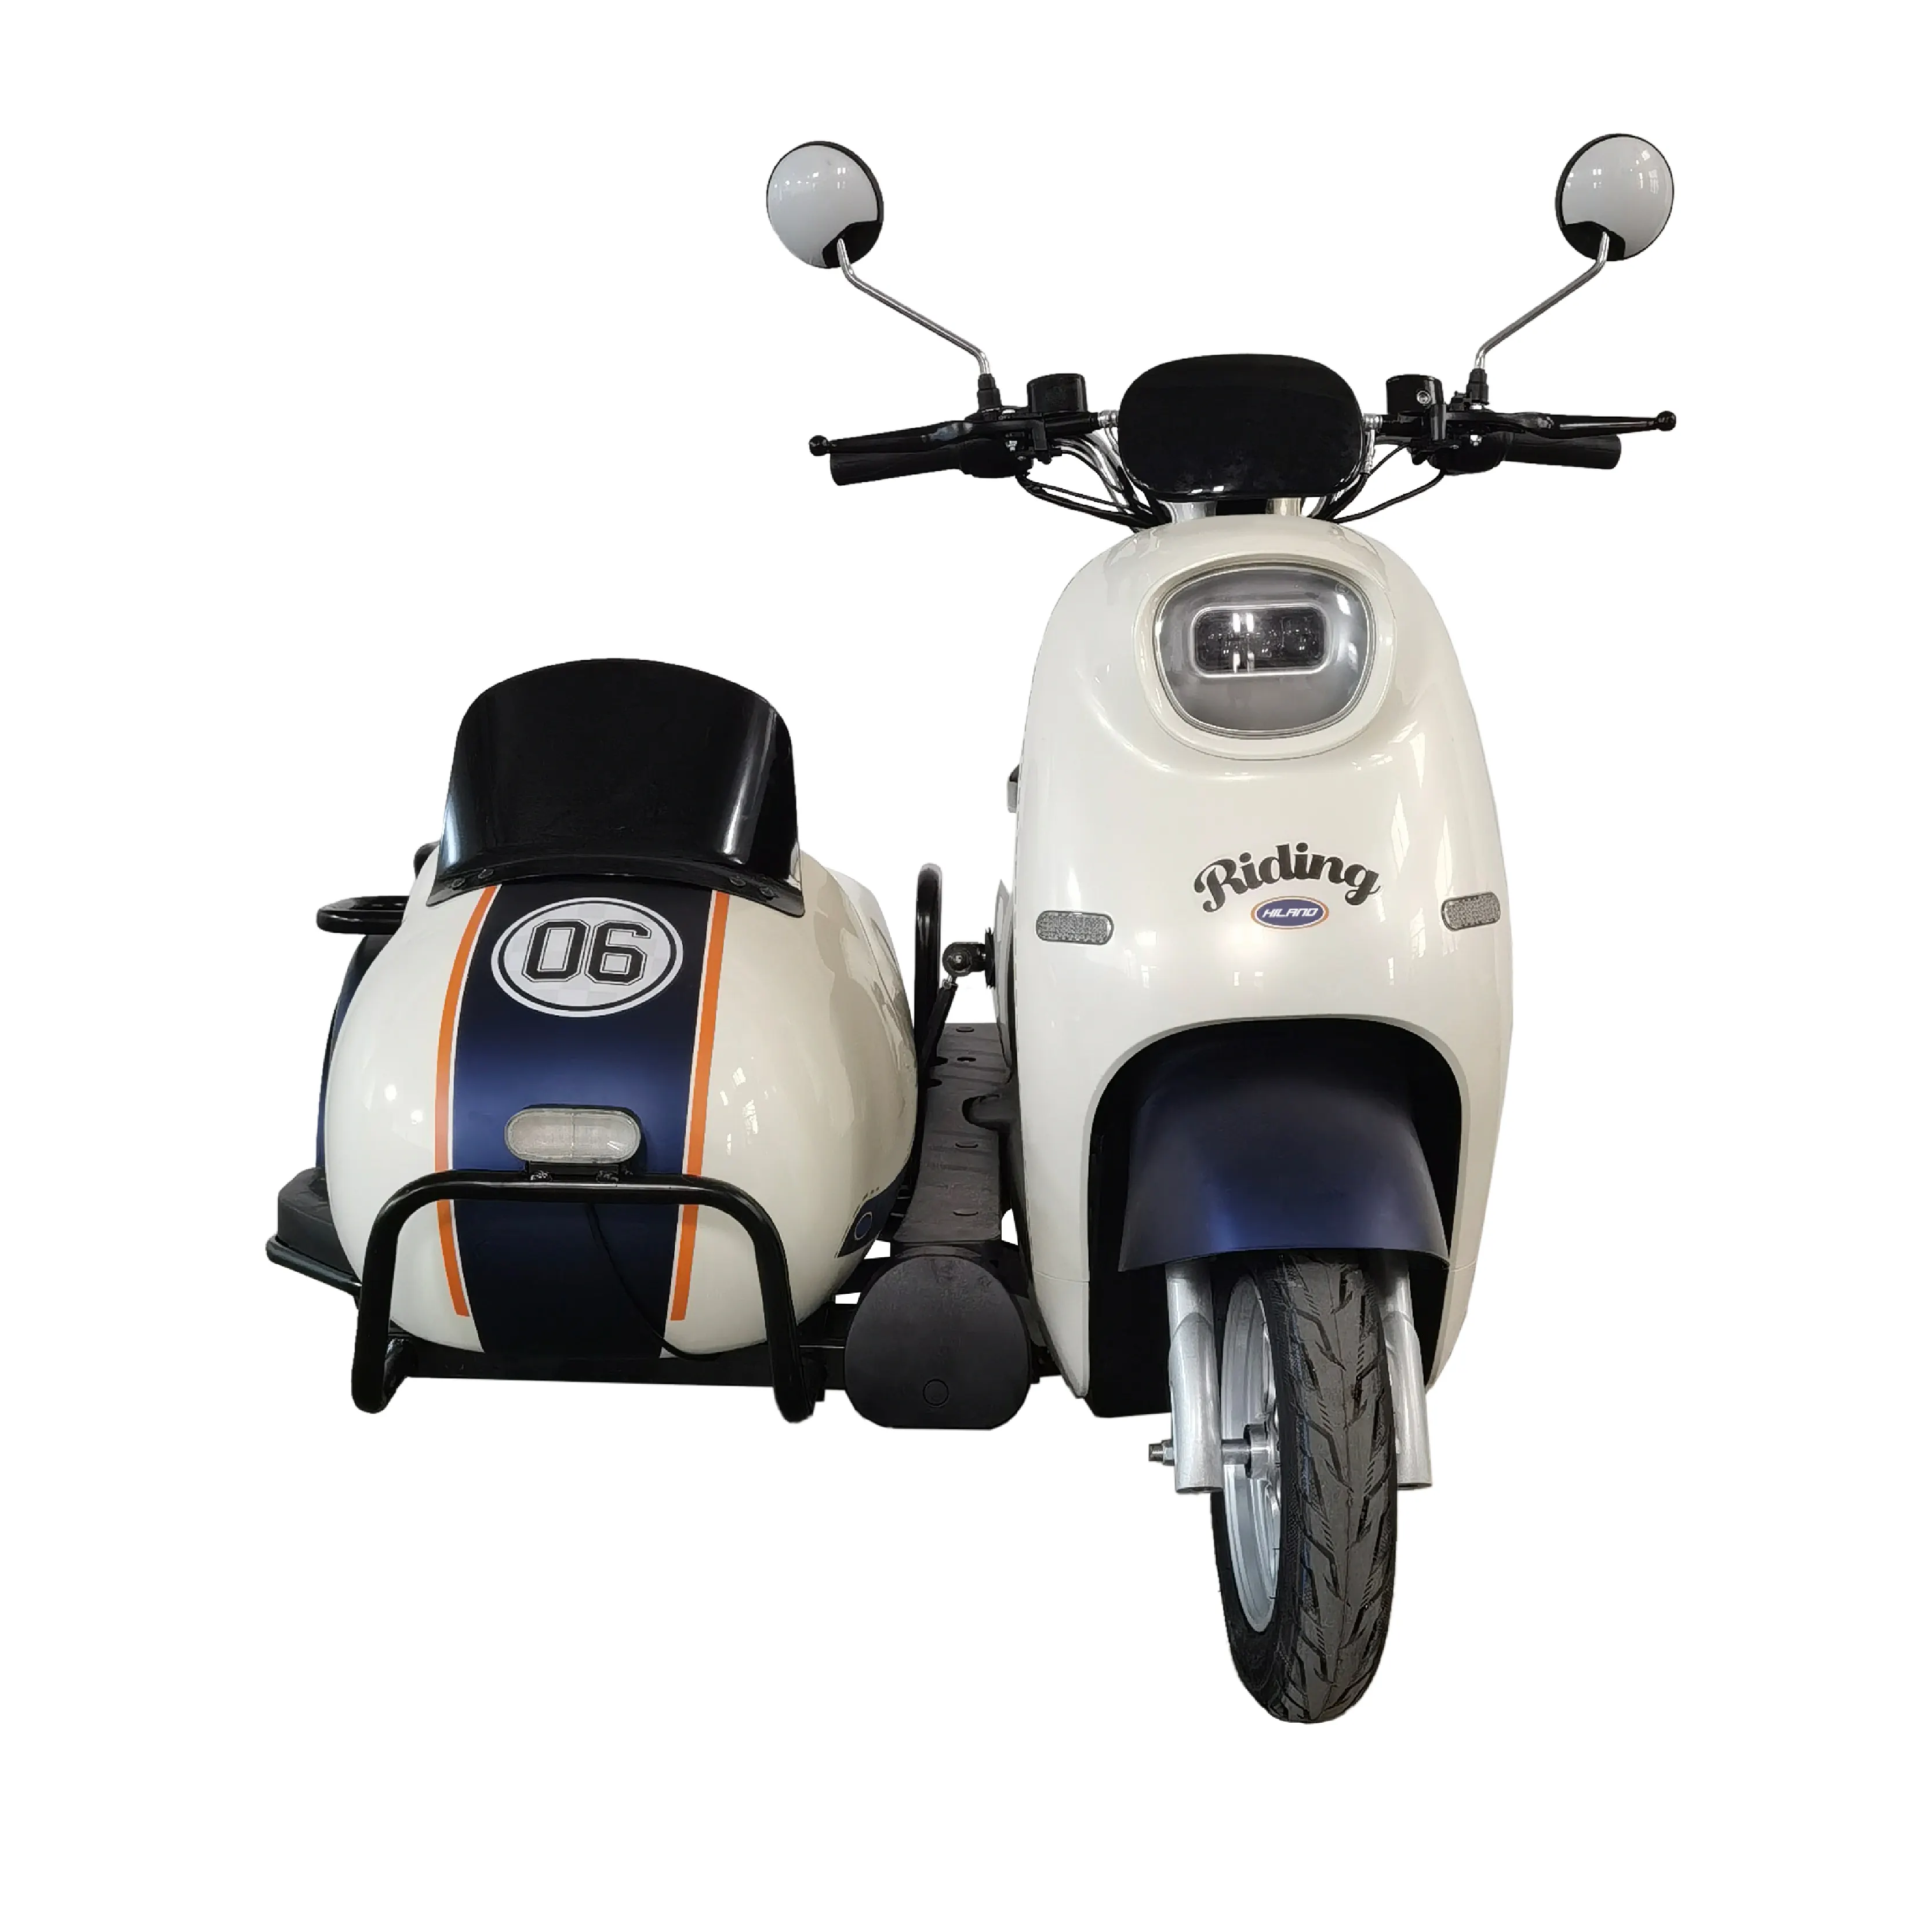 JOYKIE-Moto Électrique et Tricycle Sidecar à Vendre, Moto 3 Roues avec Voiture Latérale